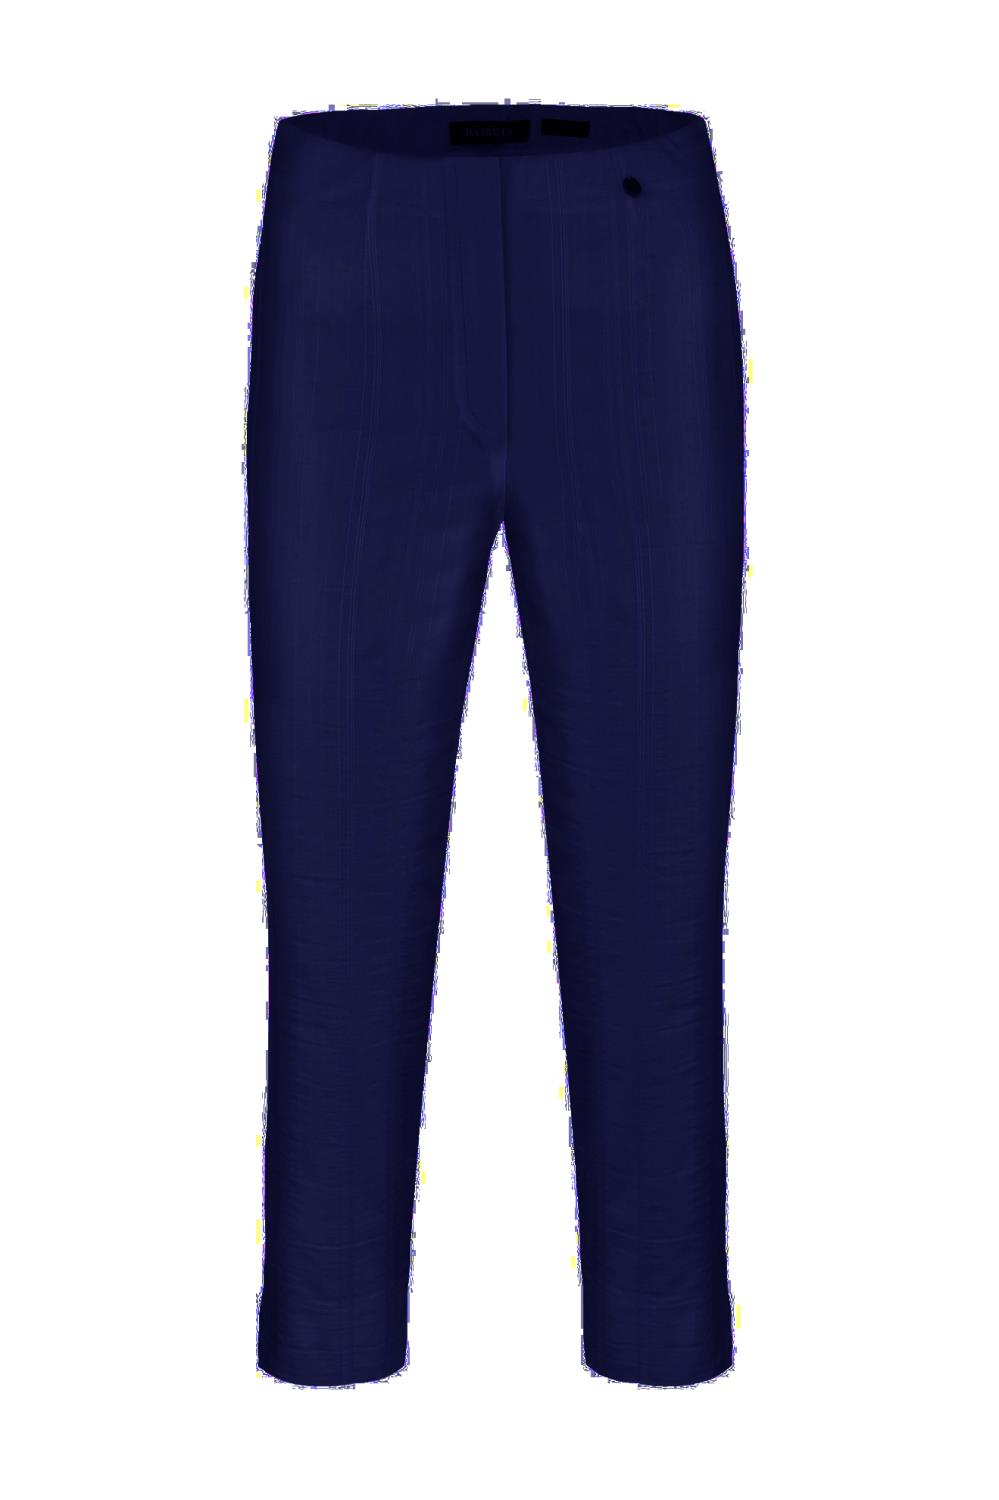 Robell Marie bukse, 55 cm, marineblå capri